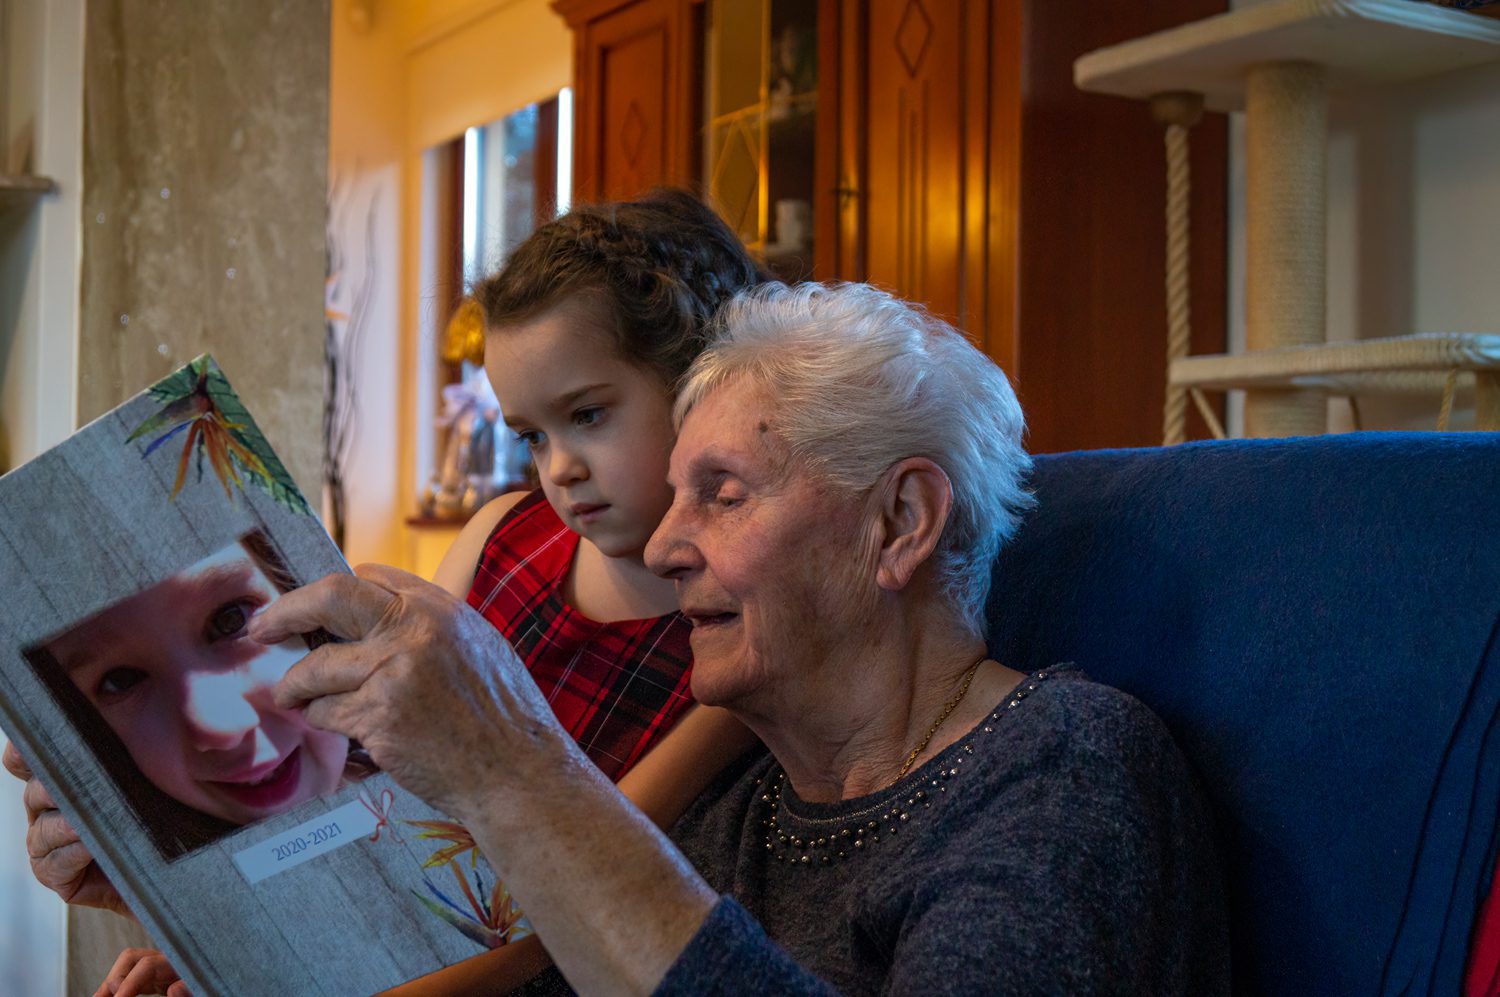 Fotoksiążka dla babci do oglądania razem z wnuczką